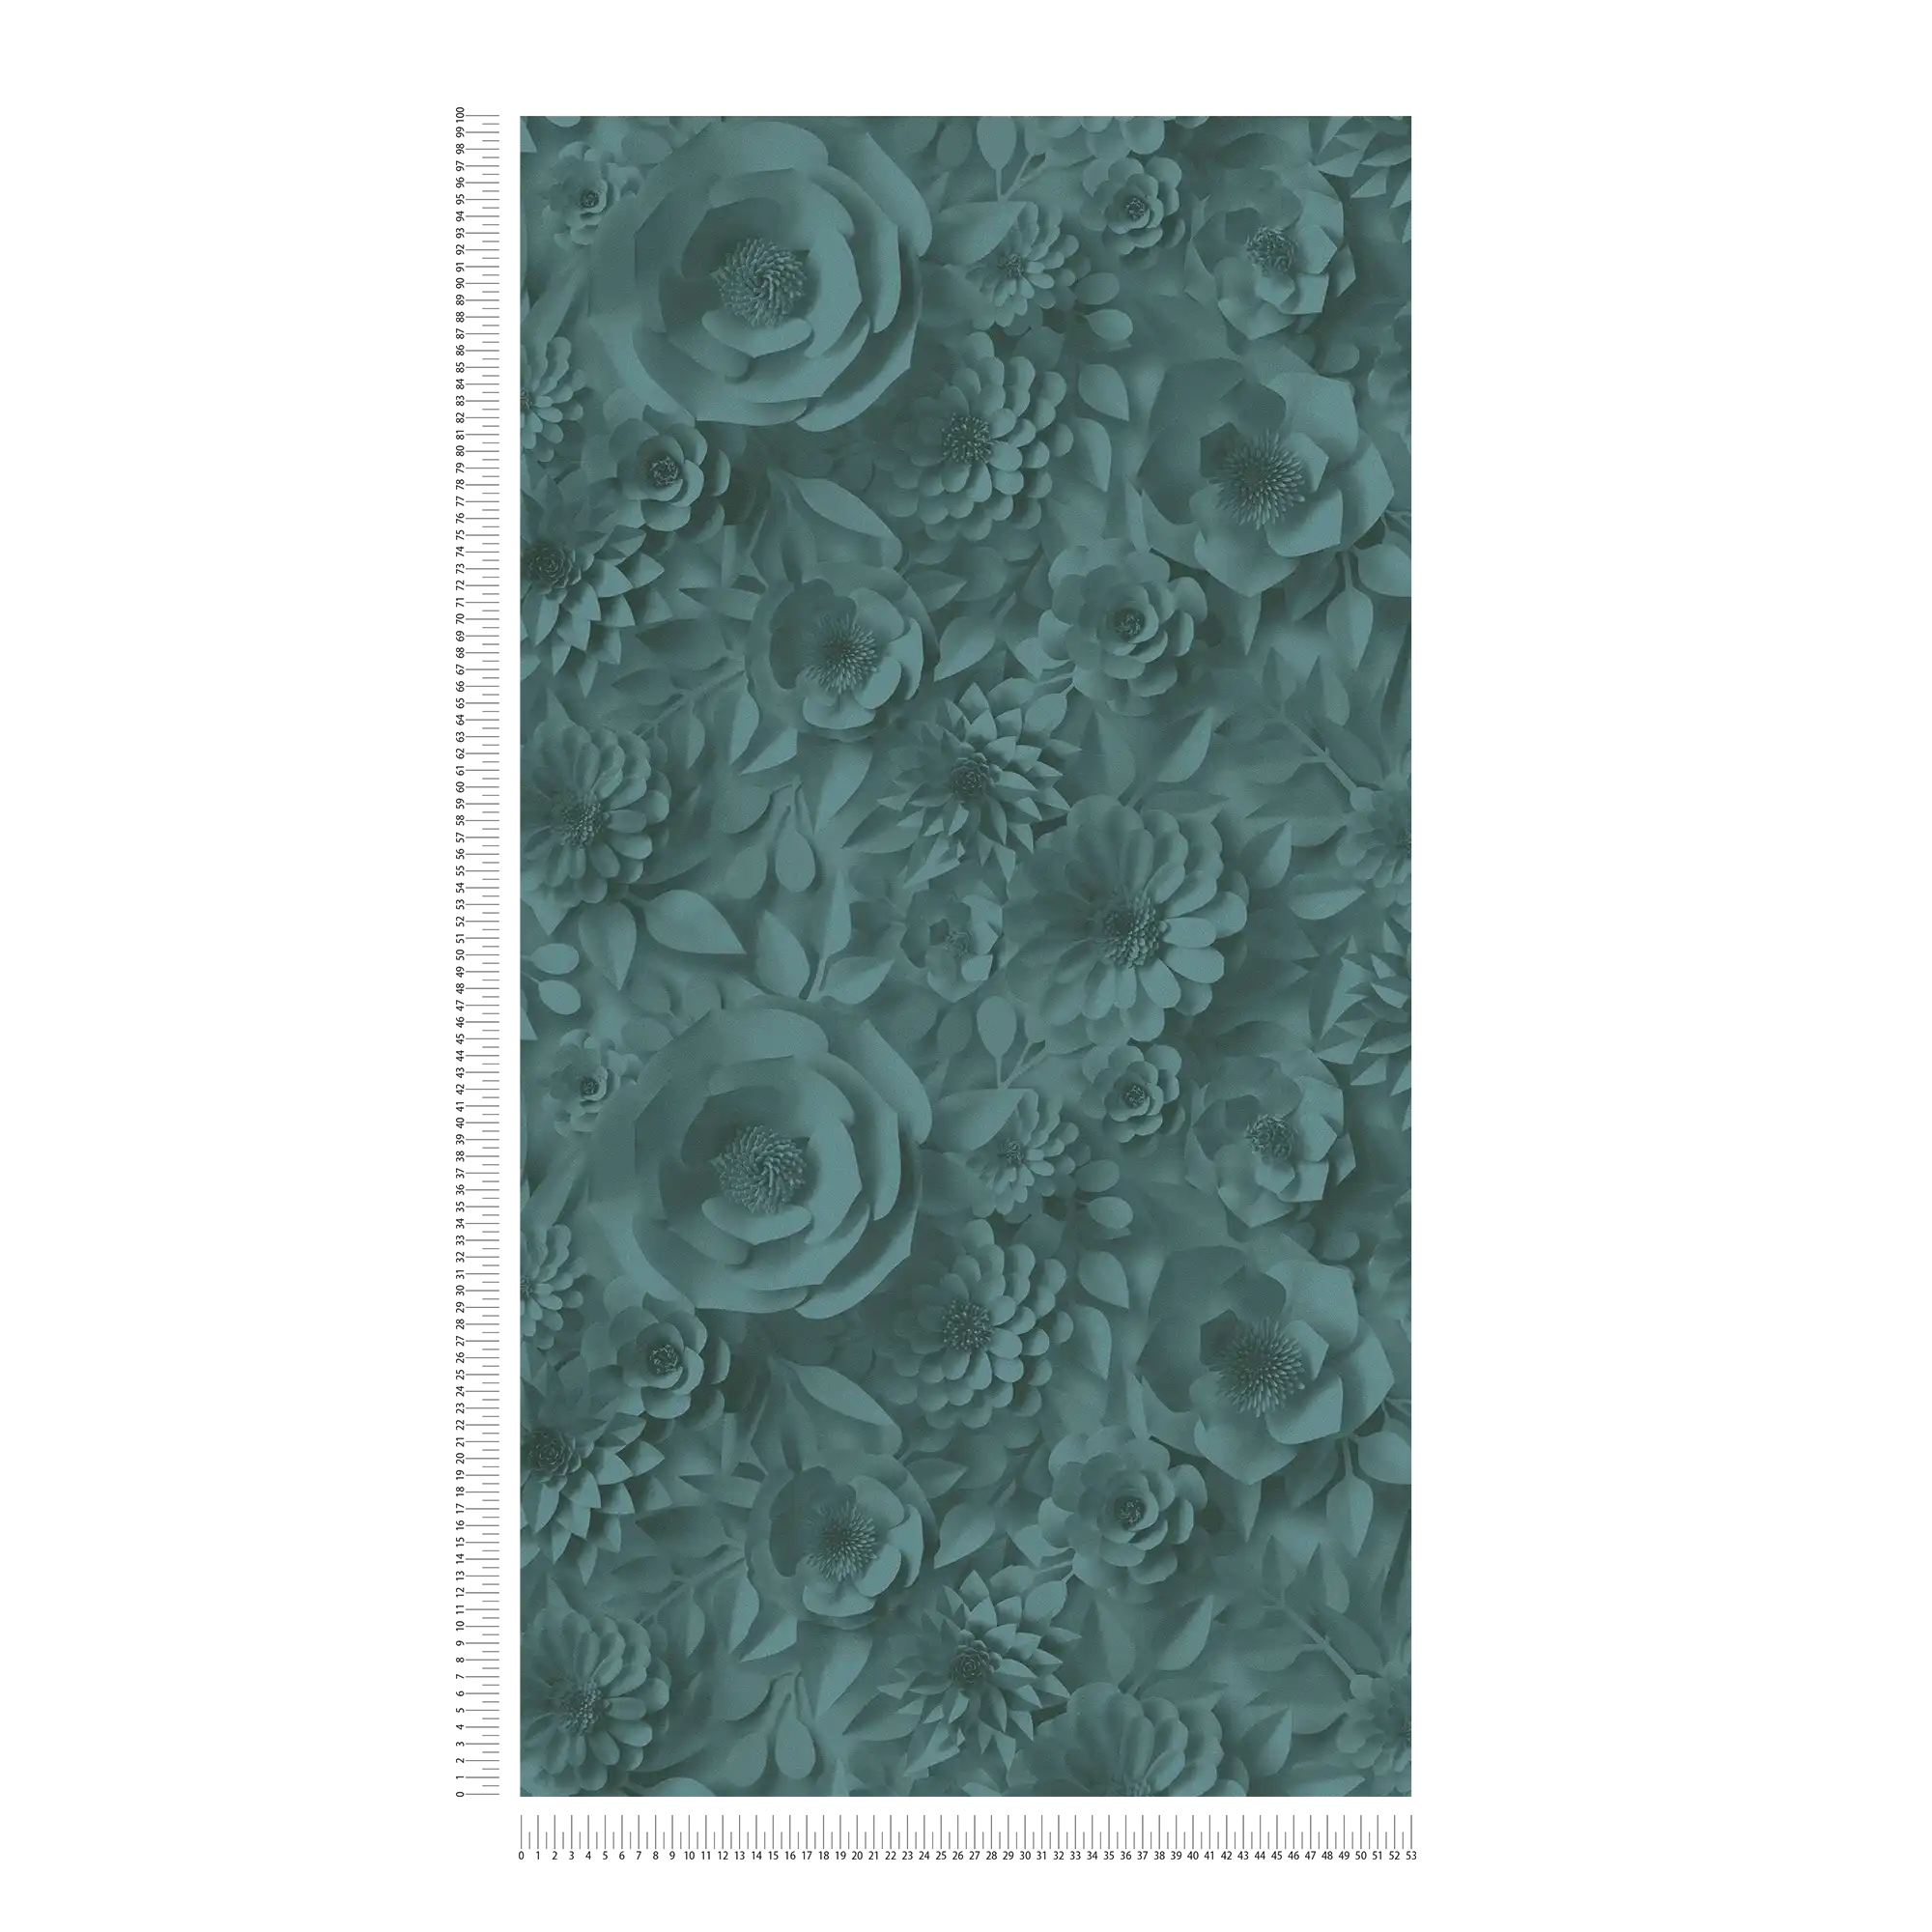             Papel pintado 3D con flores de papel, patrón floral gráfico - Verde
        